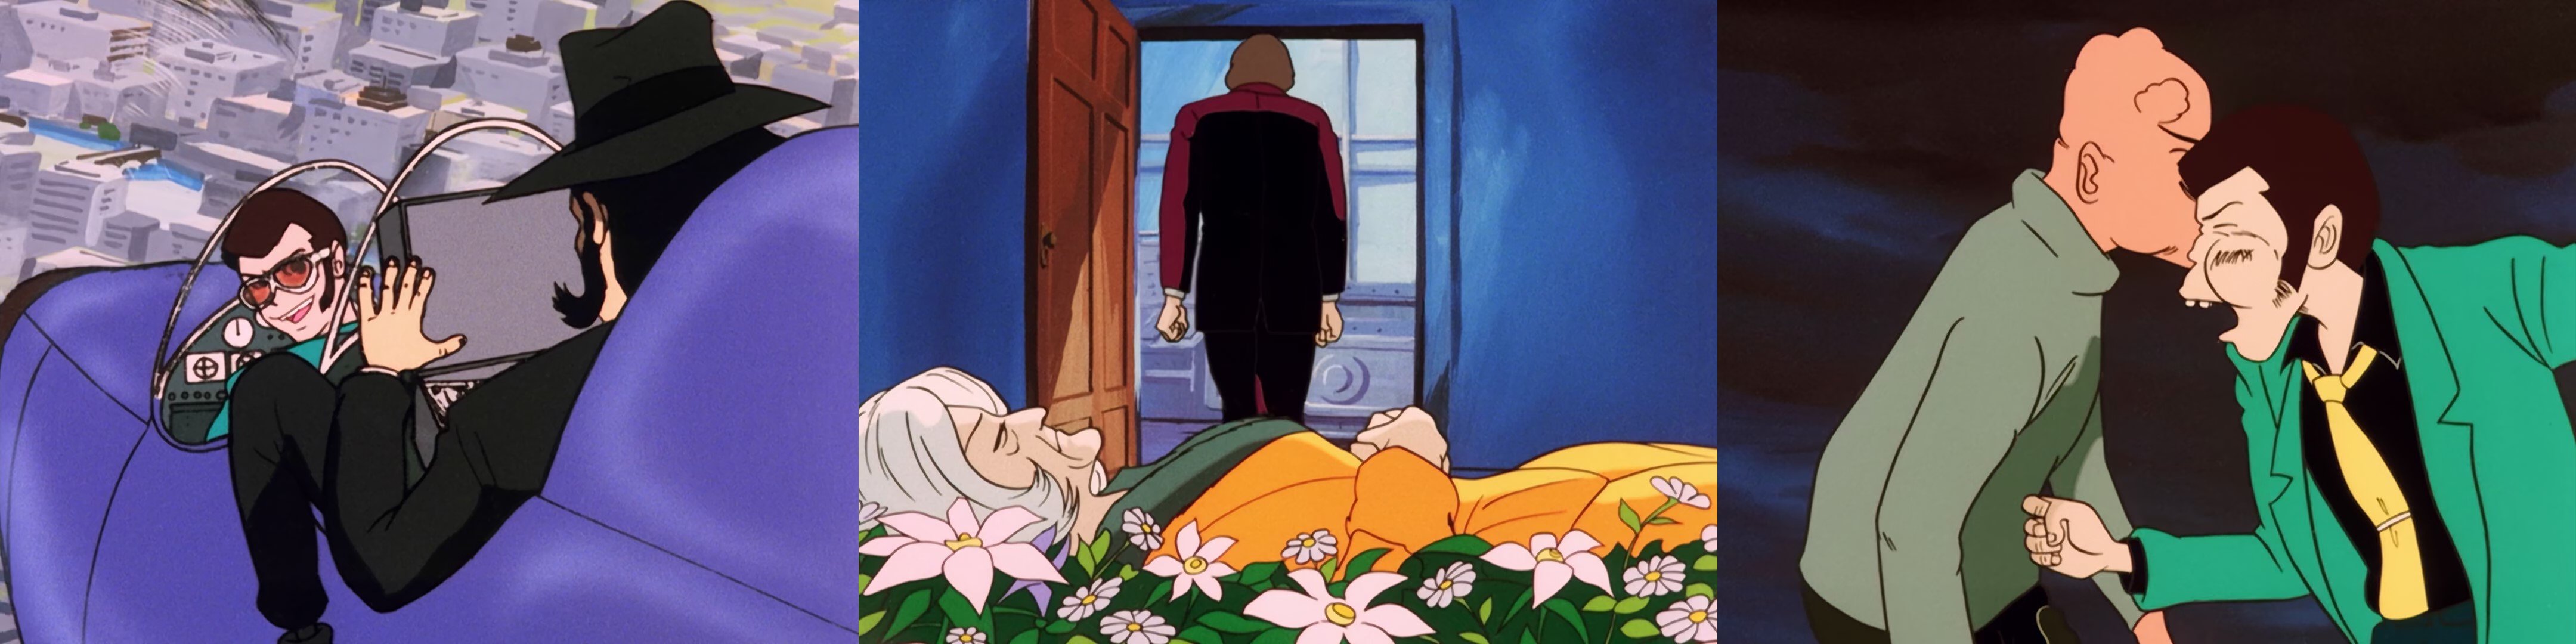 A sinistra: Lupin e Jigen in una delle scene di volo dell’episodio 10. Al centro: la tragedia di Ivanov e Silver Fox. A destra: Lupin e Flinch pieni di lividi si tirano gli ultimi cazzotti prima di stramazzare entrambi a terra.